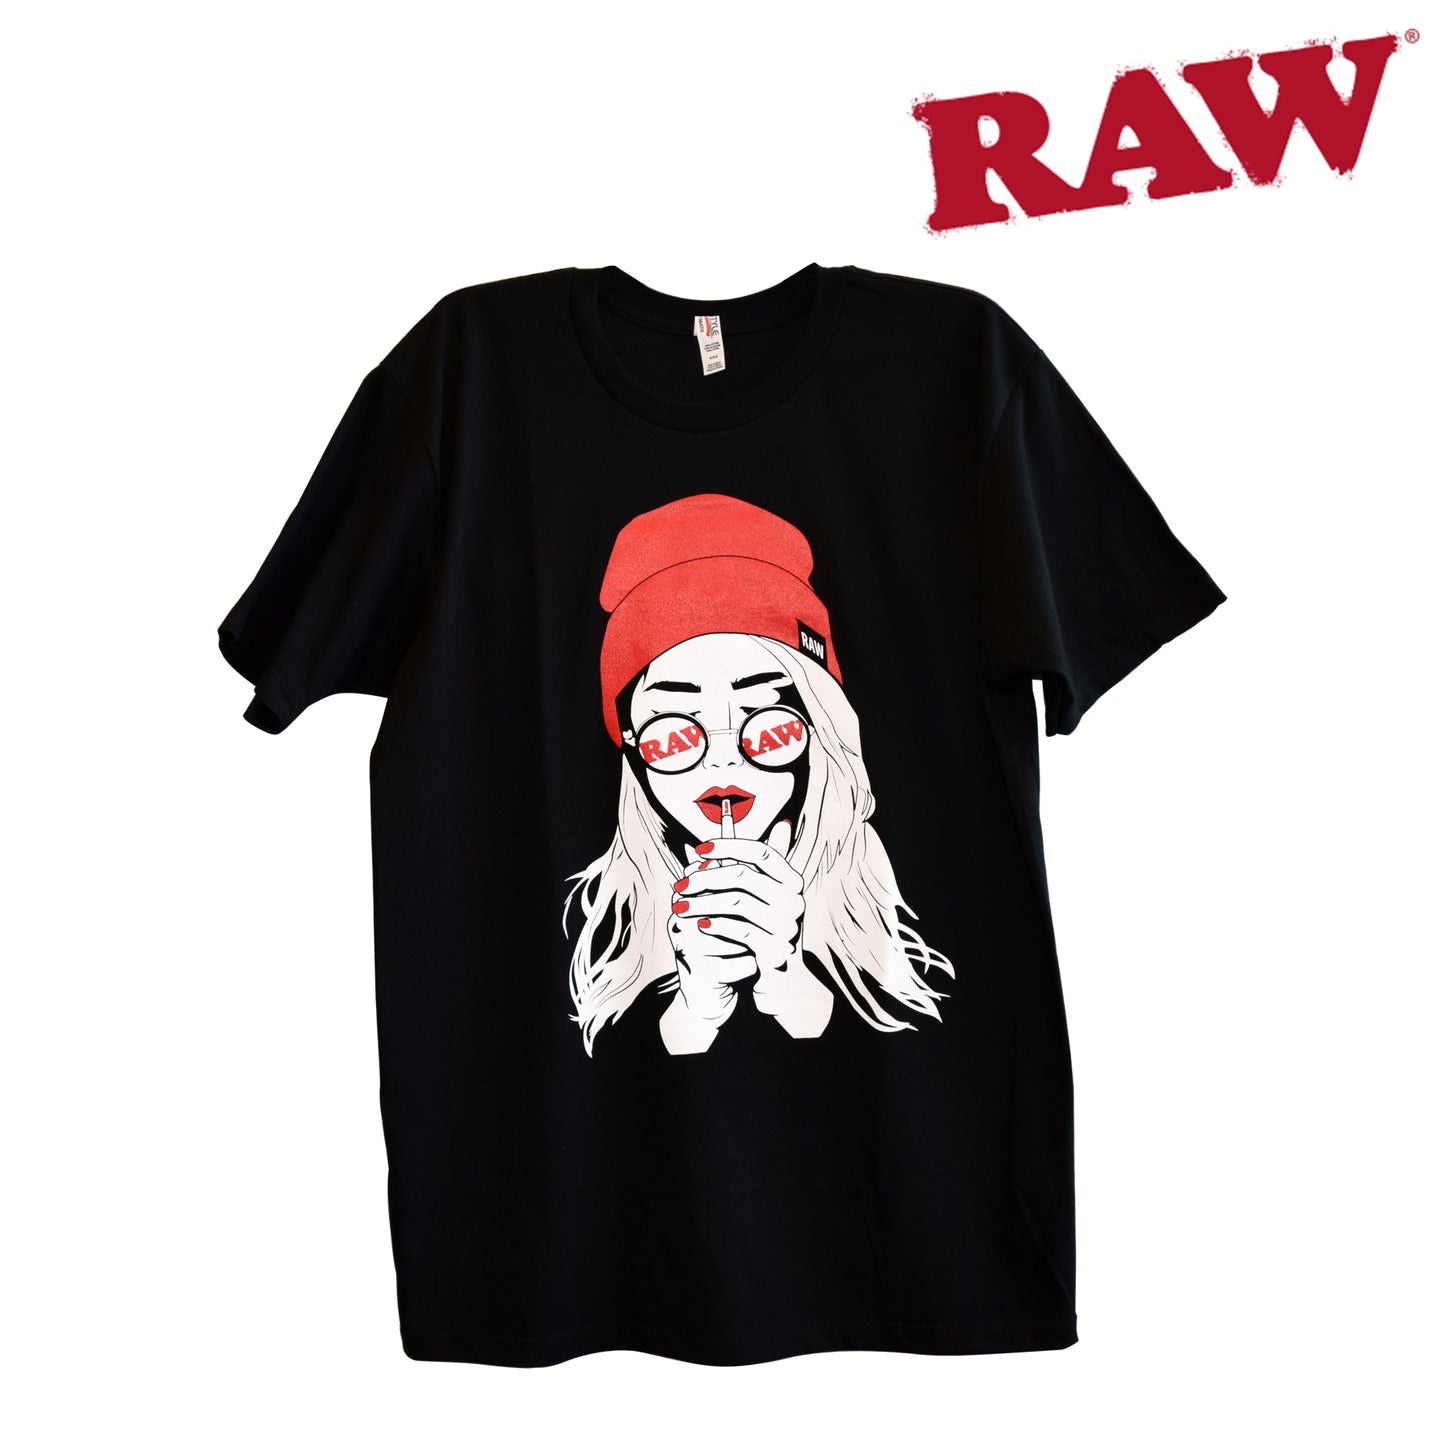 RAW Smoking Girl Shirt